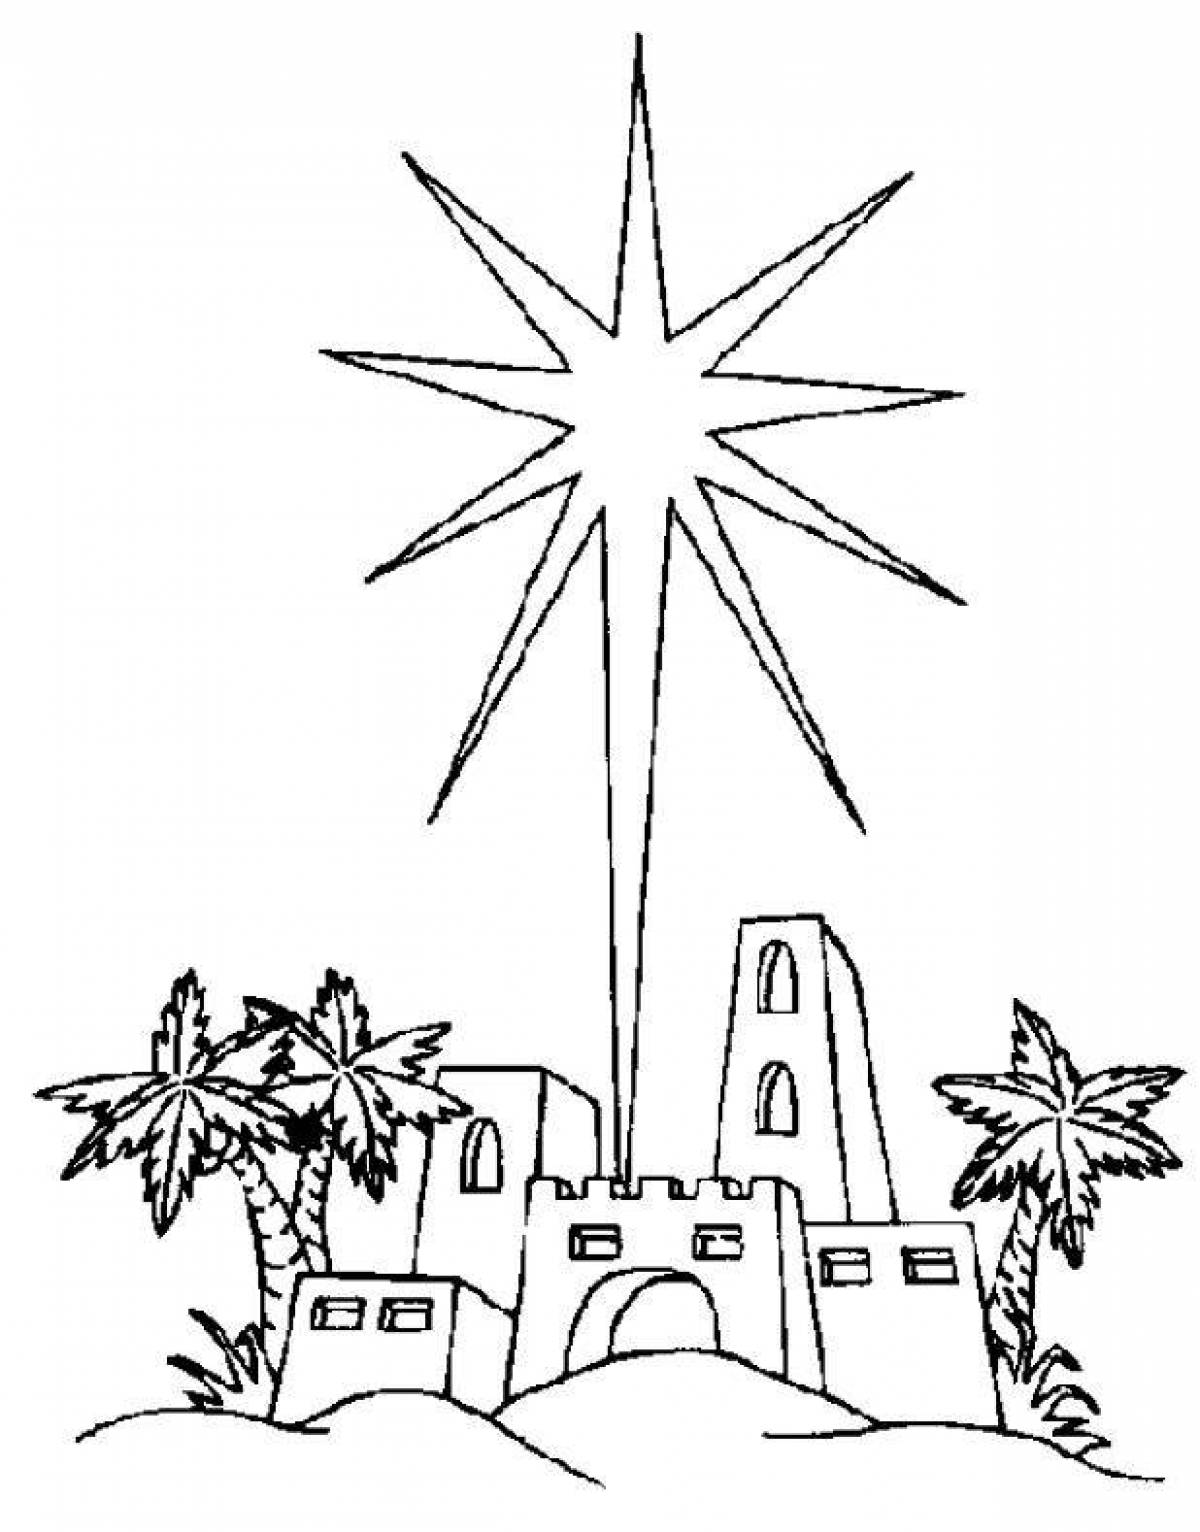 Shining coloring star of Bethlehem drawing